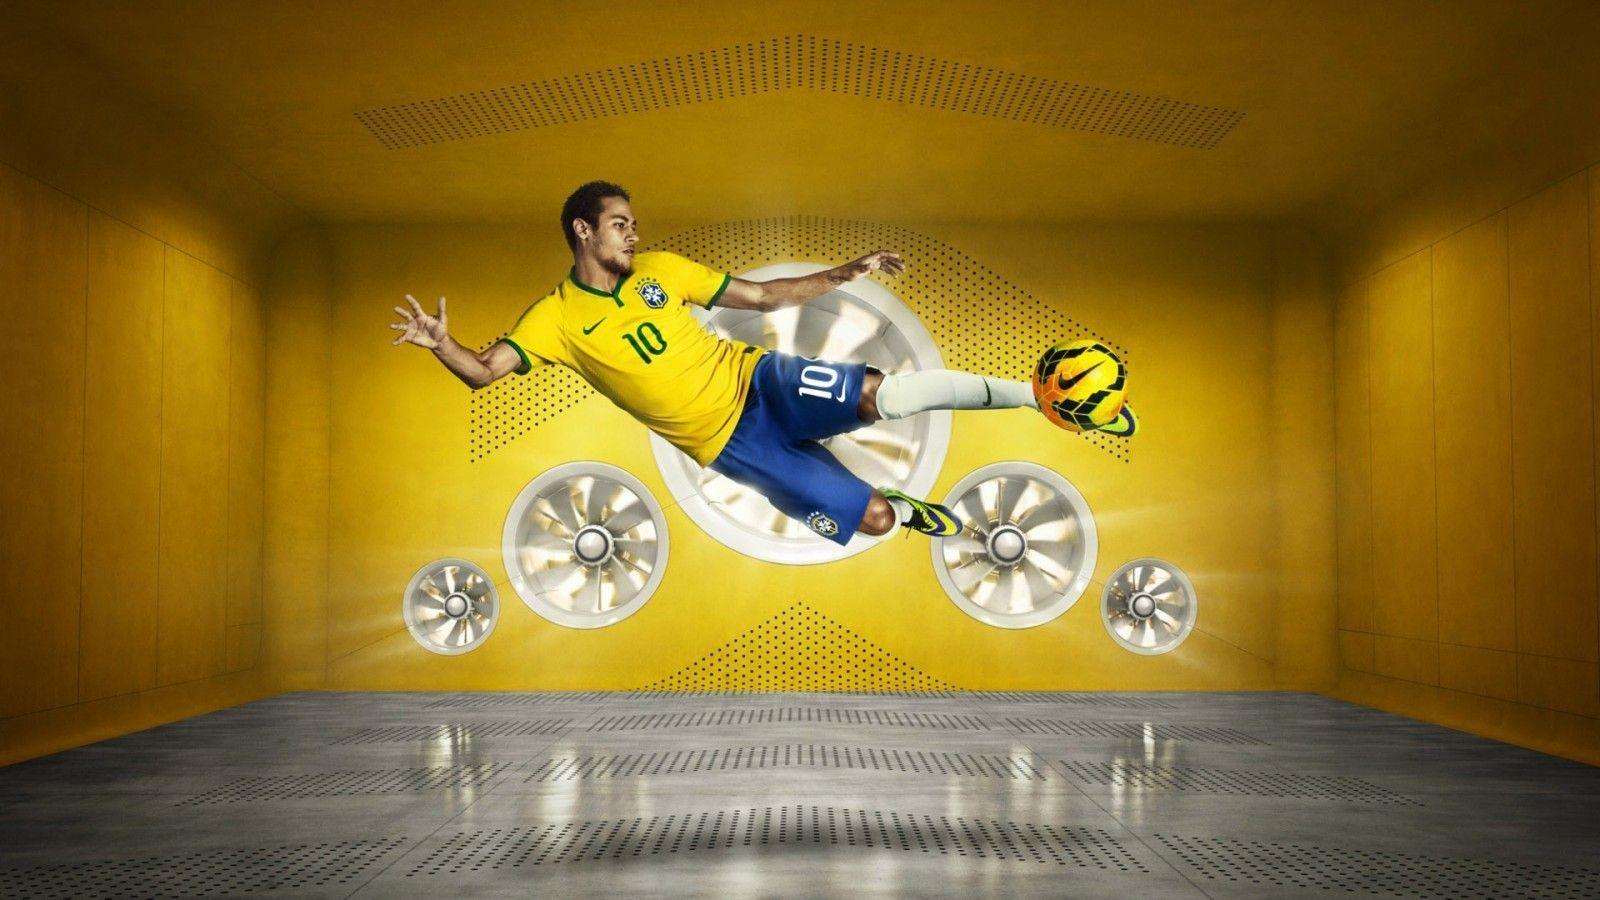 Neymar JR 2014 World Cup Brazil Nike Wallpapers Wide or HD